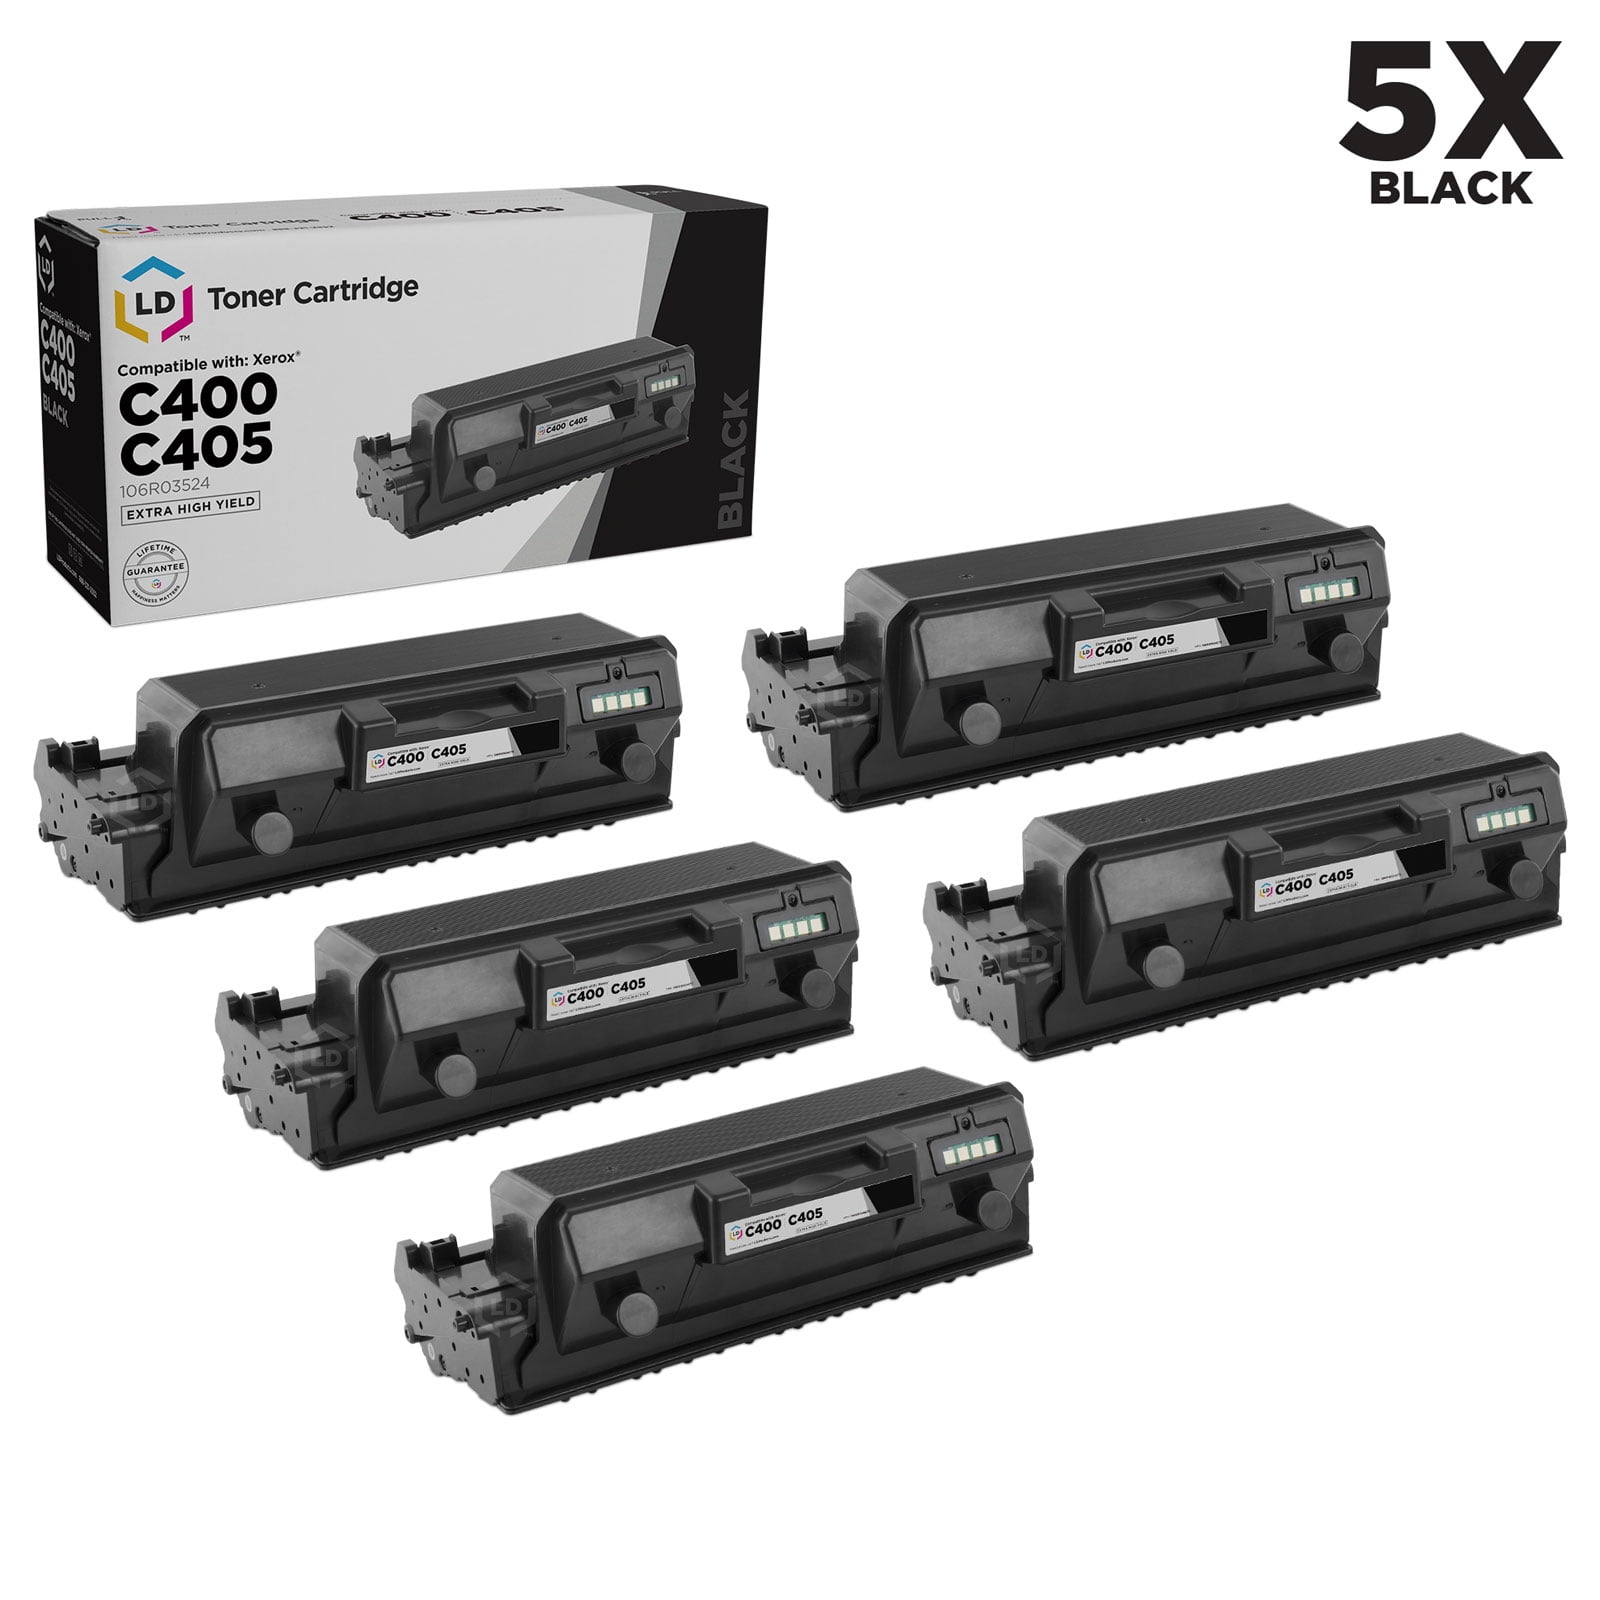 Ld Compatible Toner Cartridge Replacement For Xerox Versalink C400